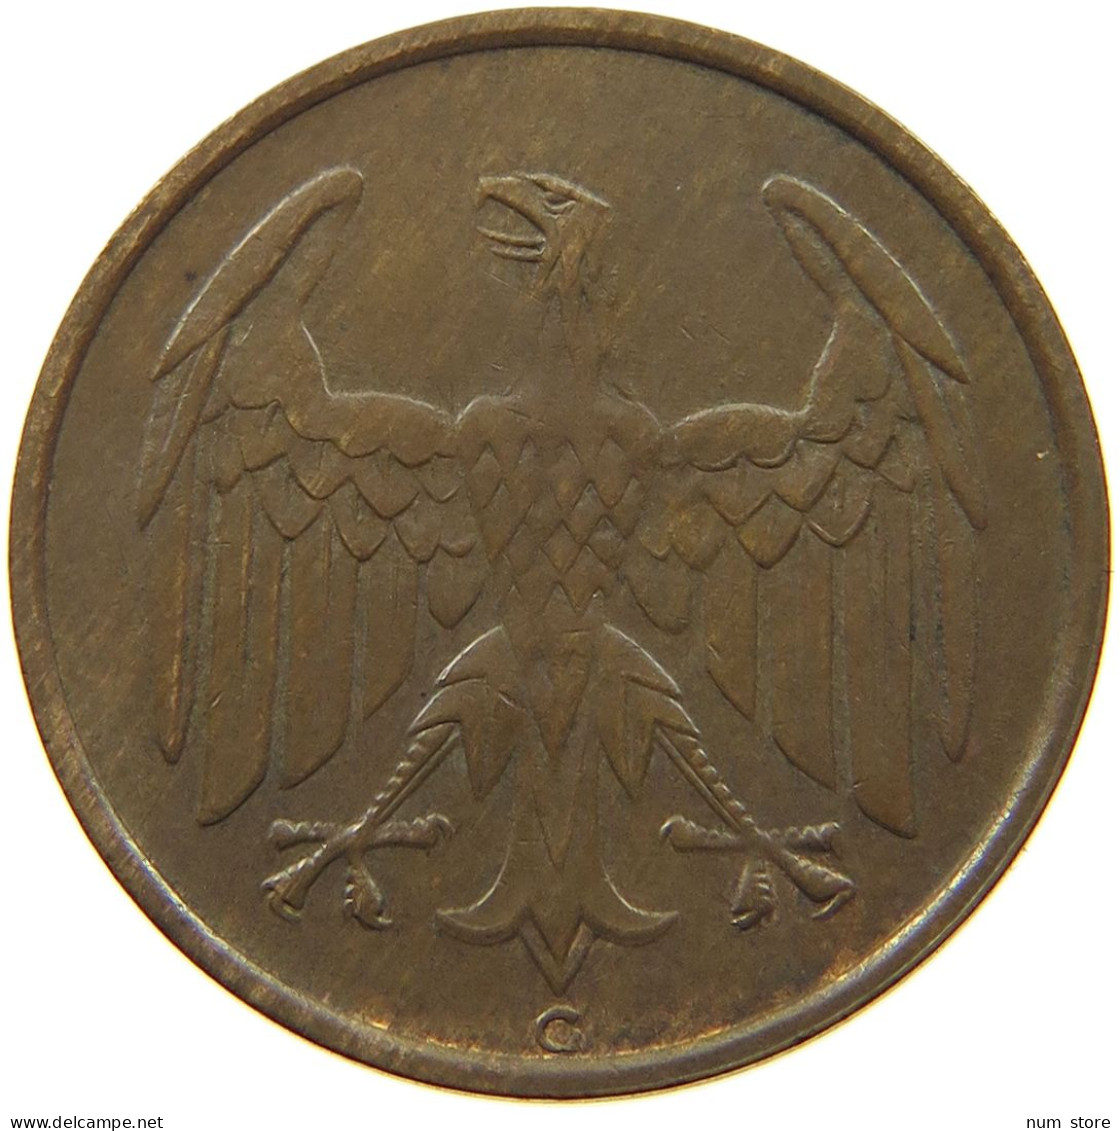 WEIMAR 4 PFENNIG 1932 G J.315, 4 REICHSPFENNIG 1932 #MA 001999 - 4 Reichspfennig